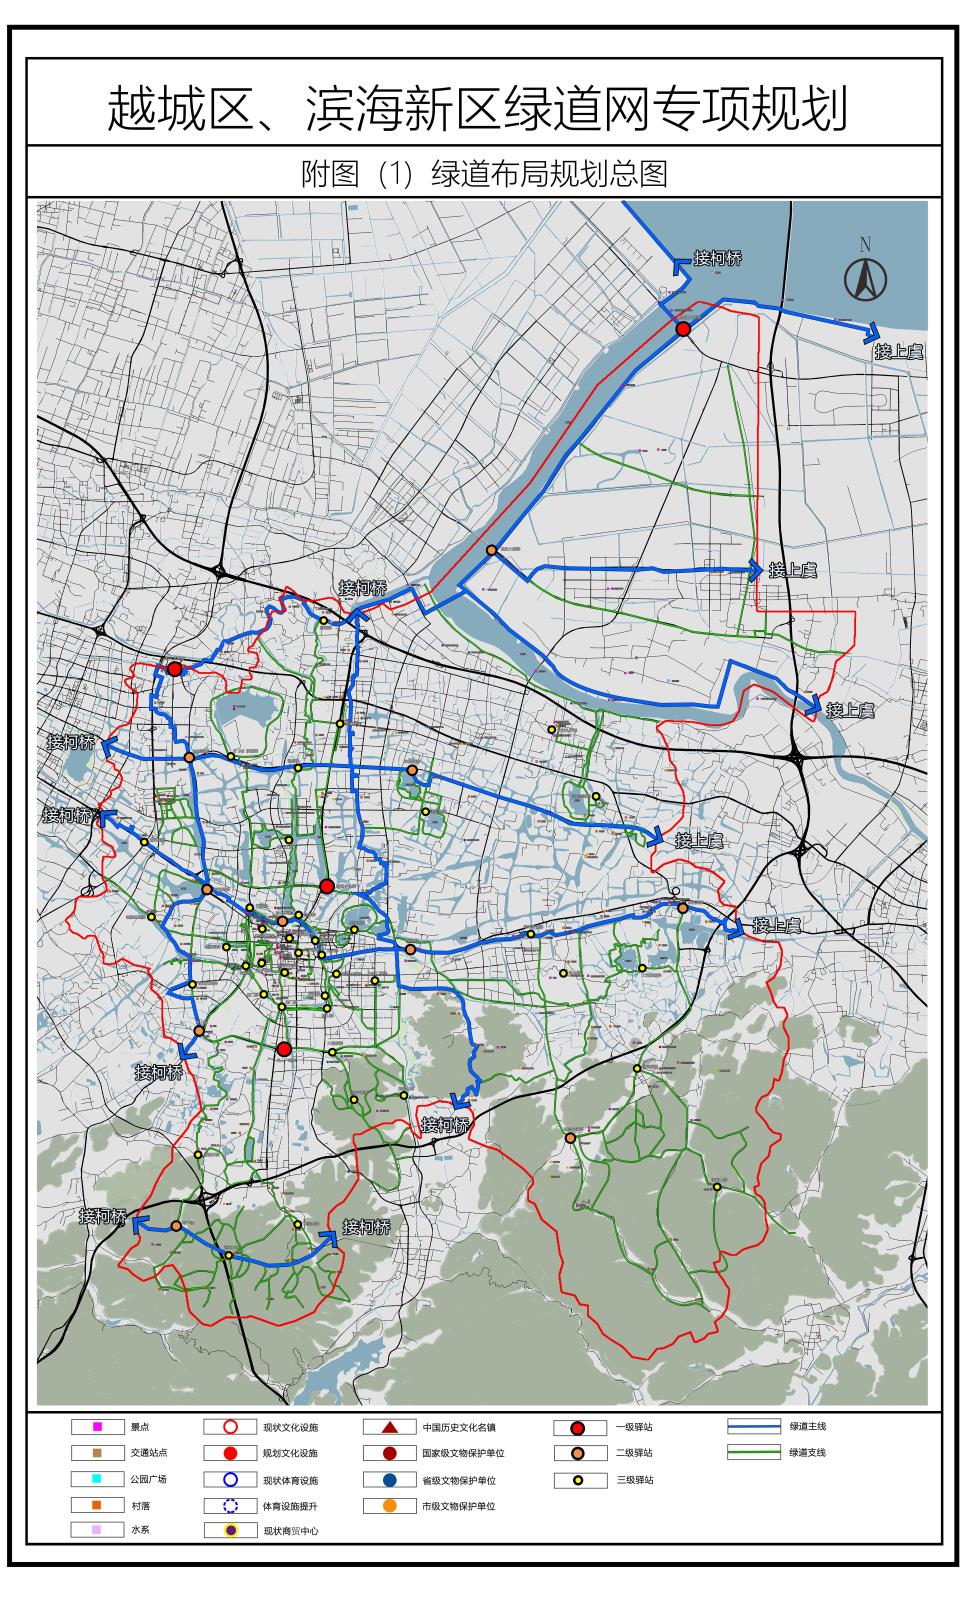 越城区、滨海新区绿道网专项规划编制项目